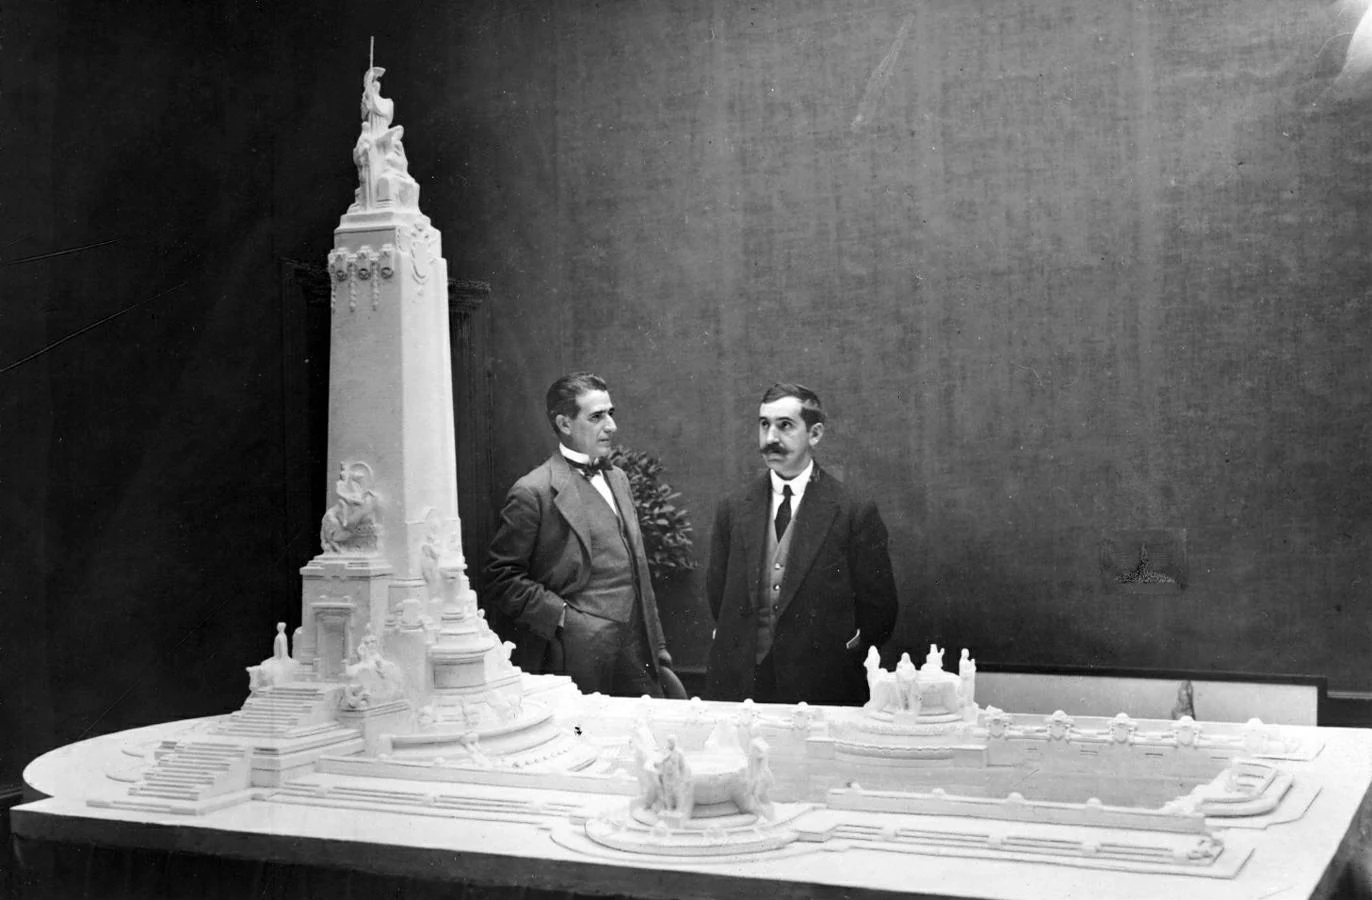 1. El arquitecto Anasagasti y el escultor Inurria junto a una maqueta del proyecto de monumento a Cervantes para la plaza de España